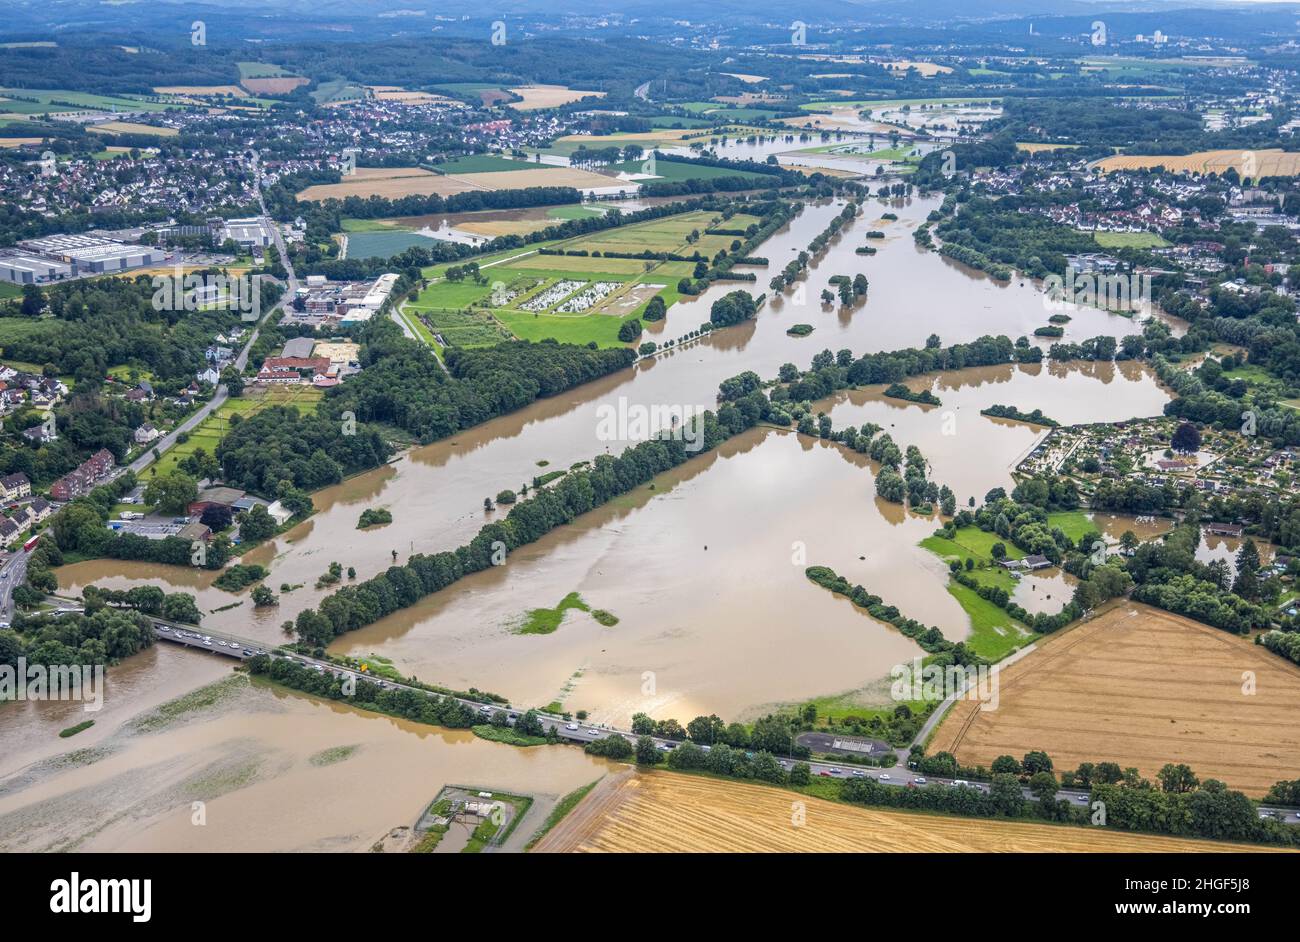 Vista aerea, alluvione della Ruhr, Schwerte, zona della Ruhr, Renania settentrionale-Vestfalia, Germania, DE, Europa, vista degli uccelli, fotografia aerea, fotografia aerea, Foto Stock